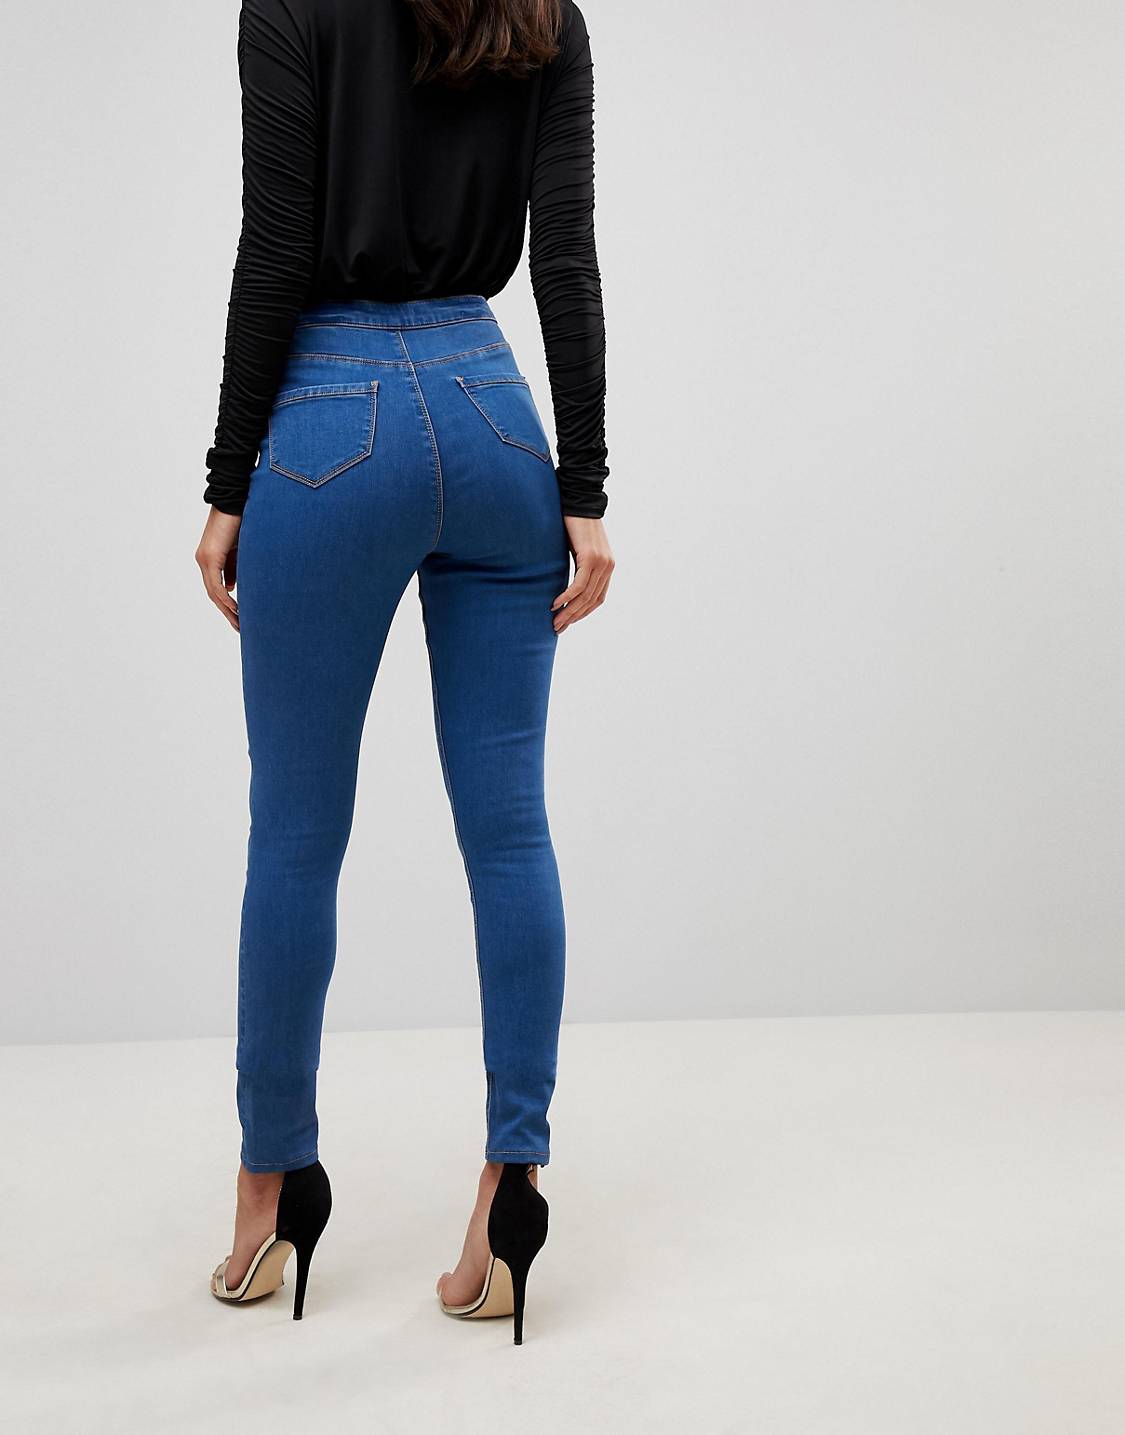 Обтянутые джинсы женские. Обтягивающие джинсы женские. Облегающие джинсы женские. Обтягивающие синие джинсы. Джинс женские обтягивающи.